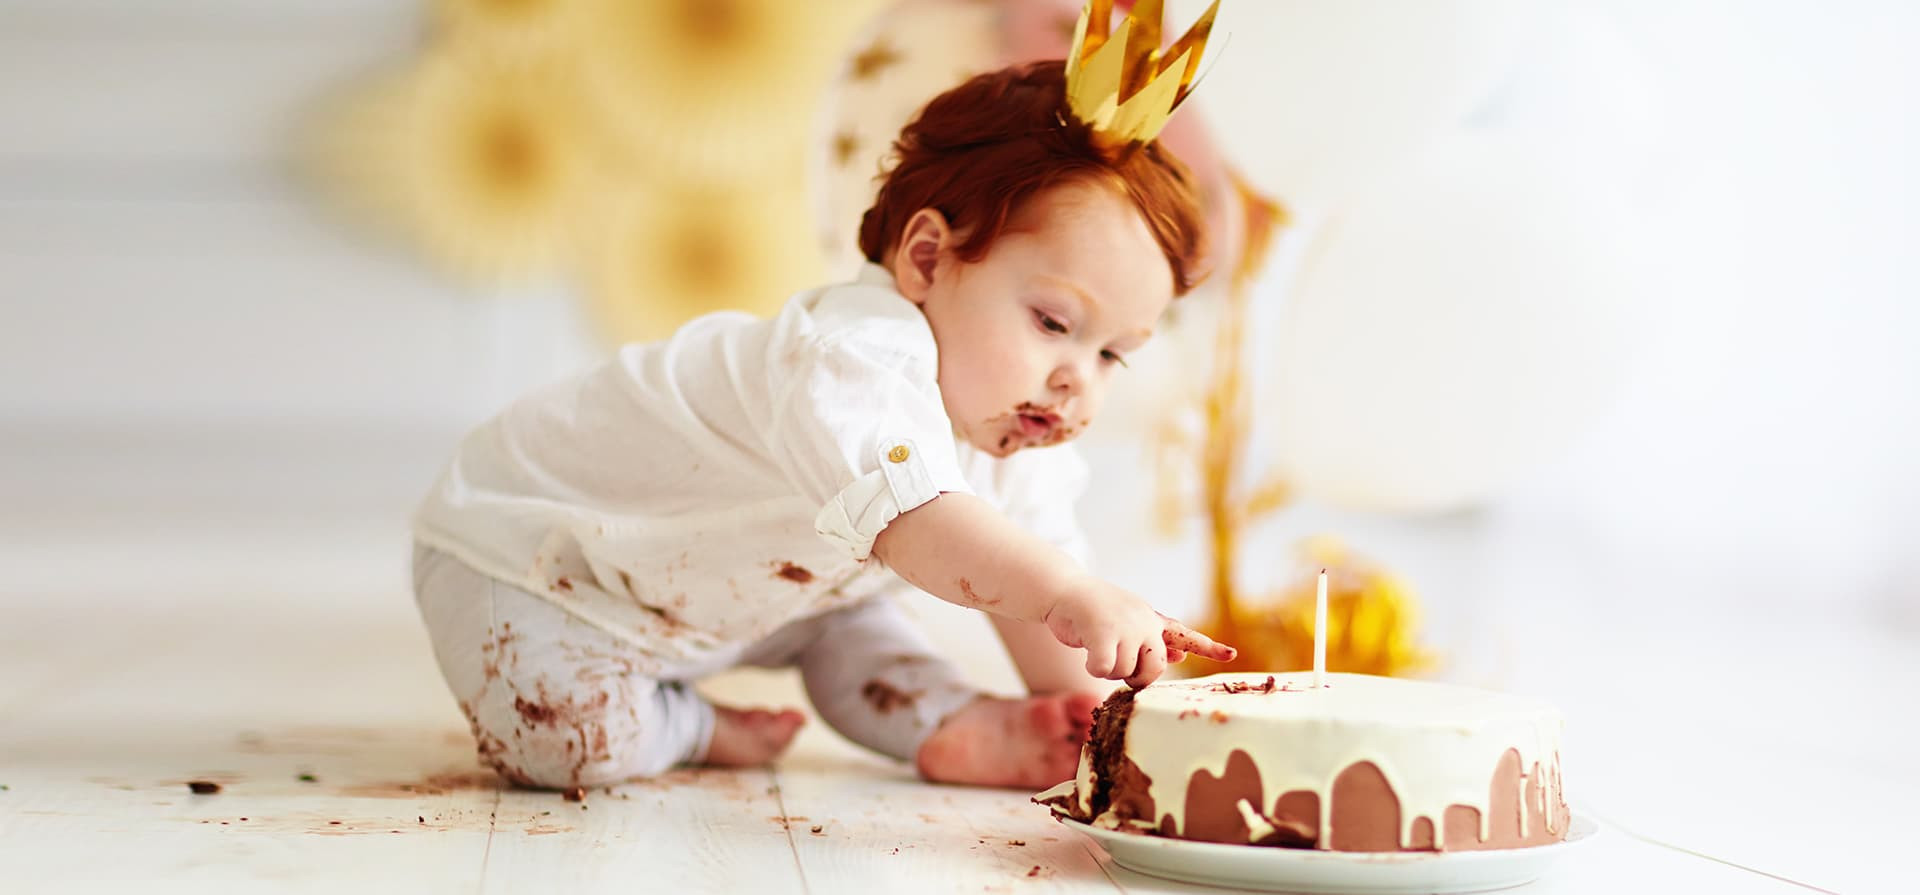 Gâteau d'anniversaire sans culpabilité! – Bébé mange seul